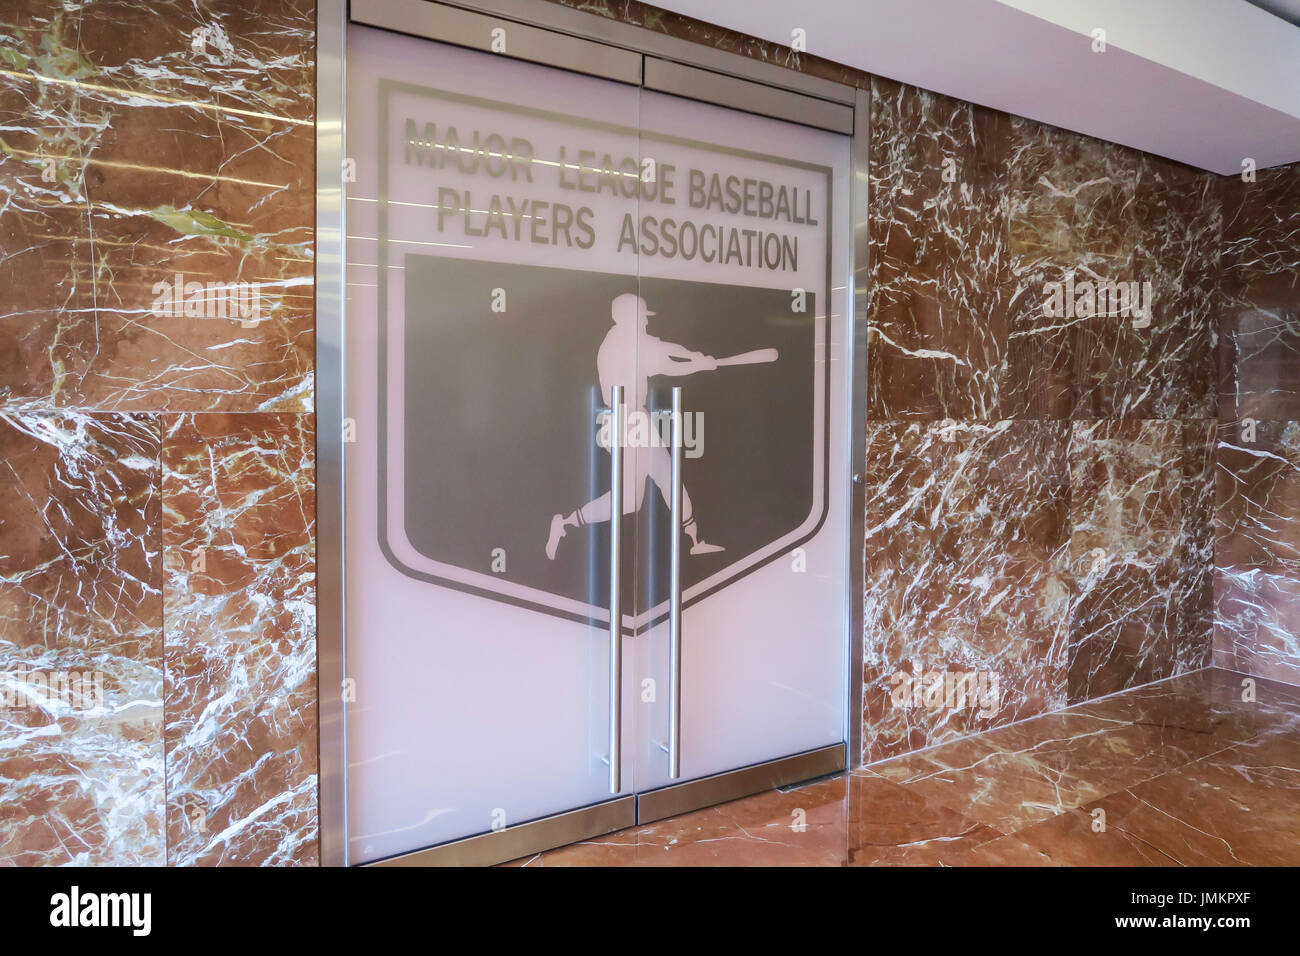 Uffici pf Major League Baseball Players Association, NYC, STATI UNITI D'AMERICA Foto Stock